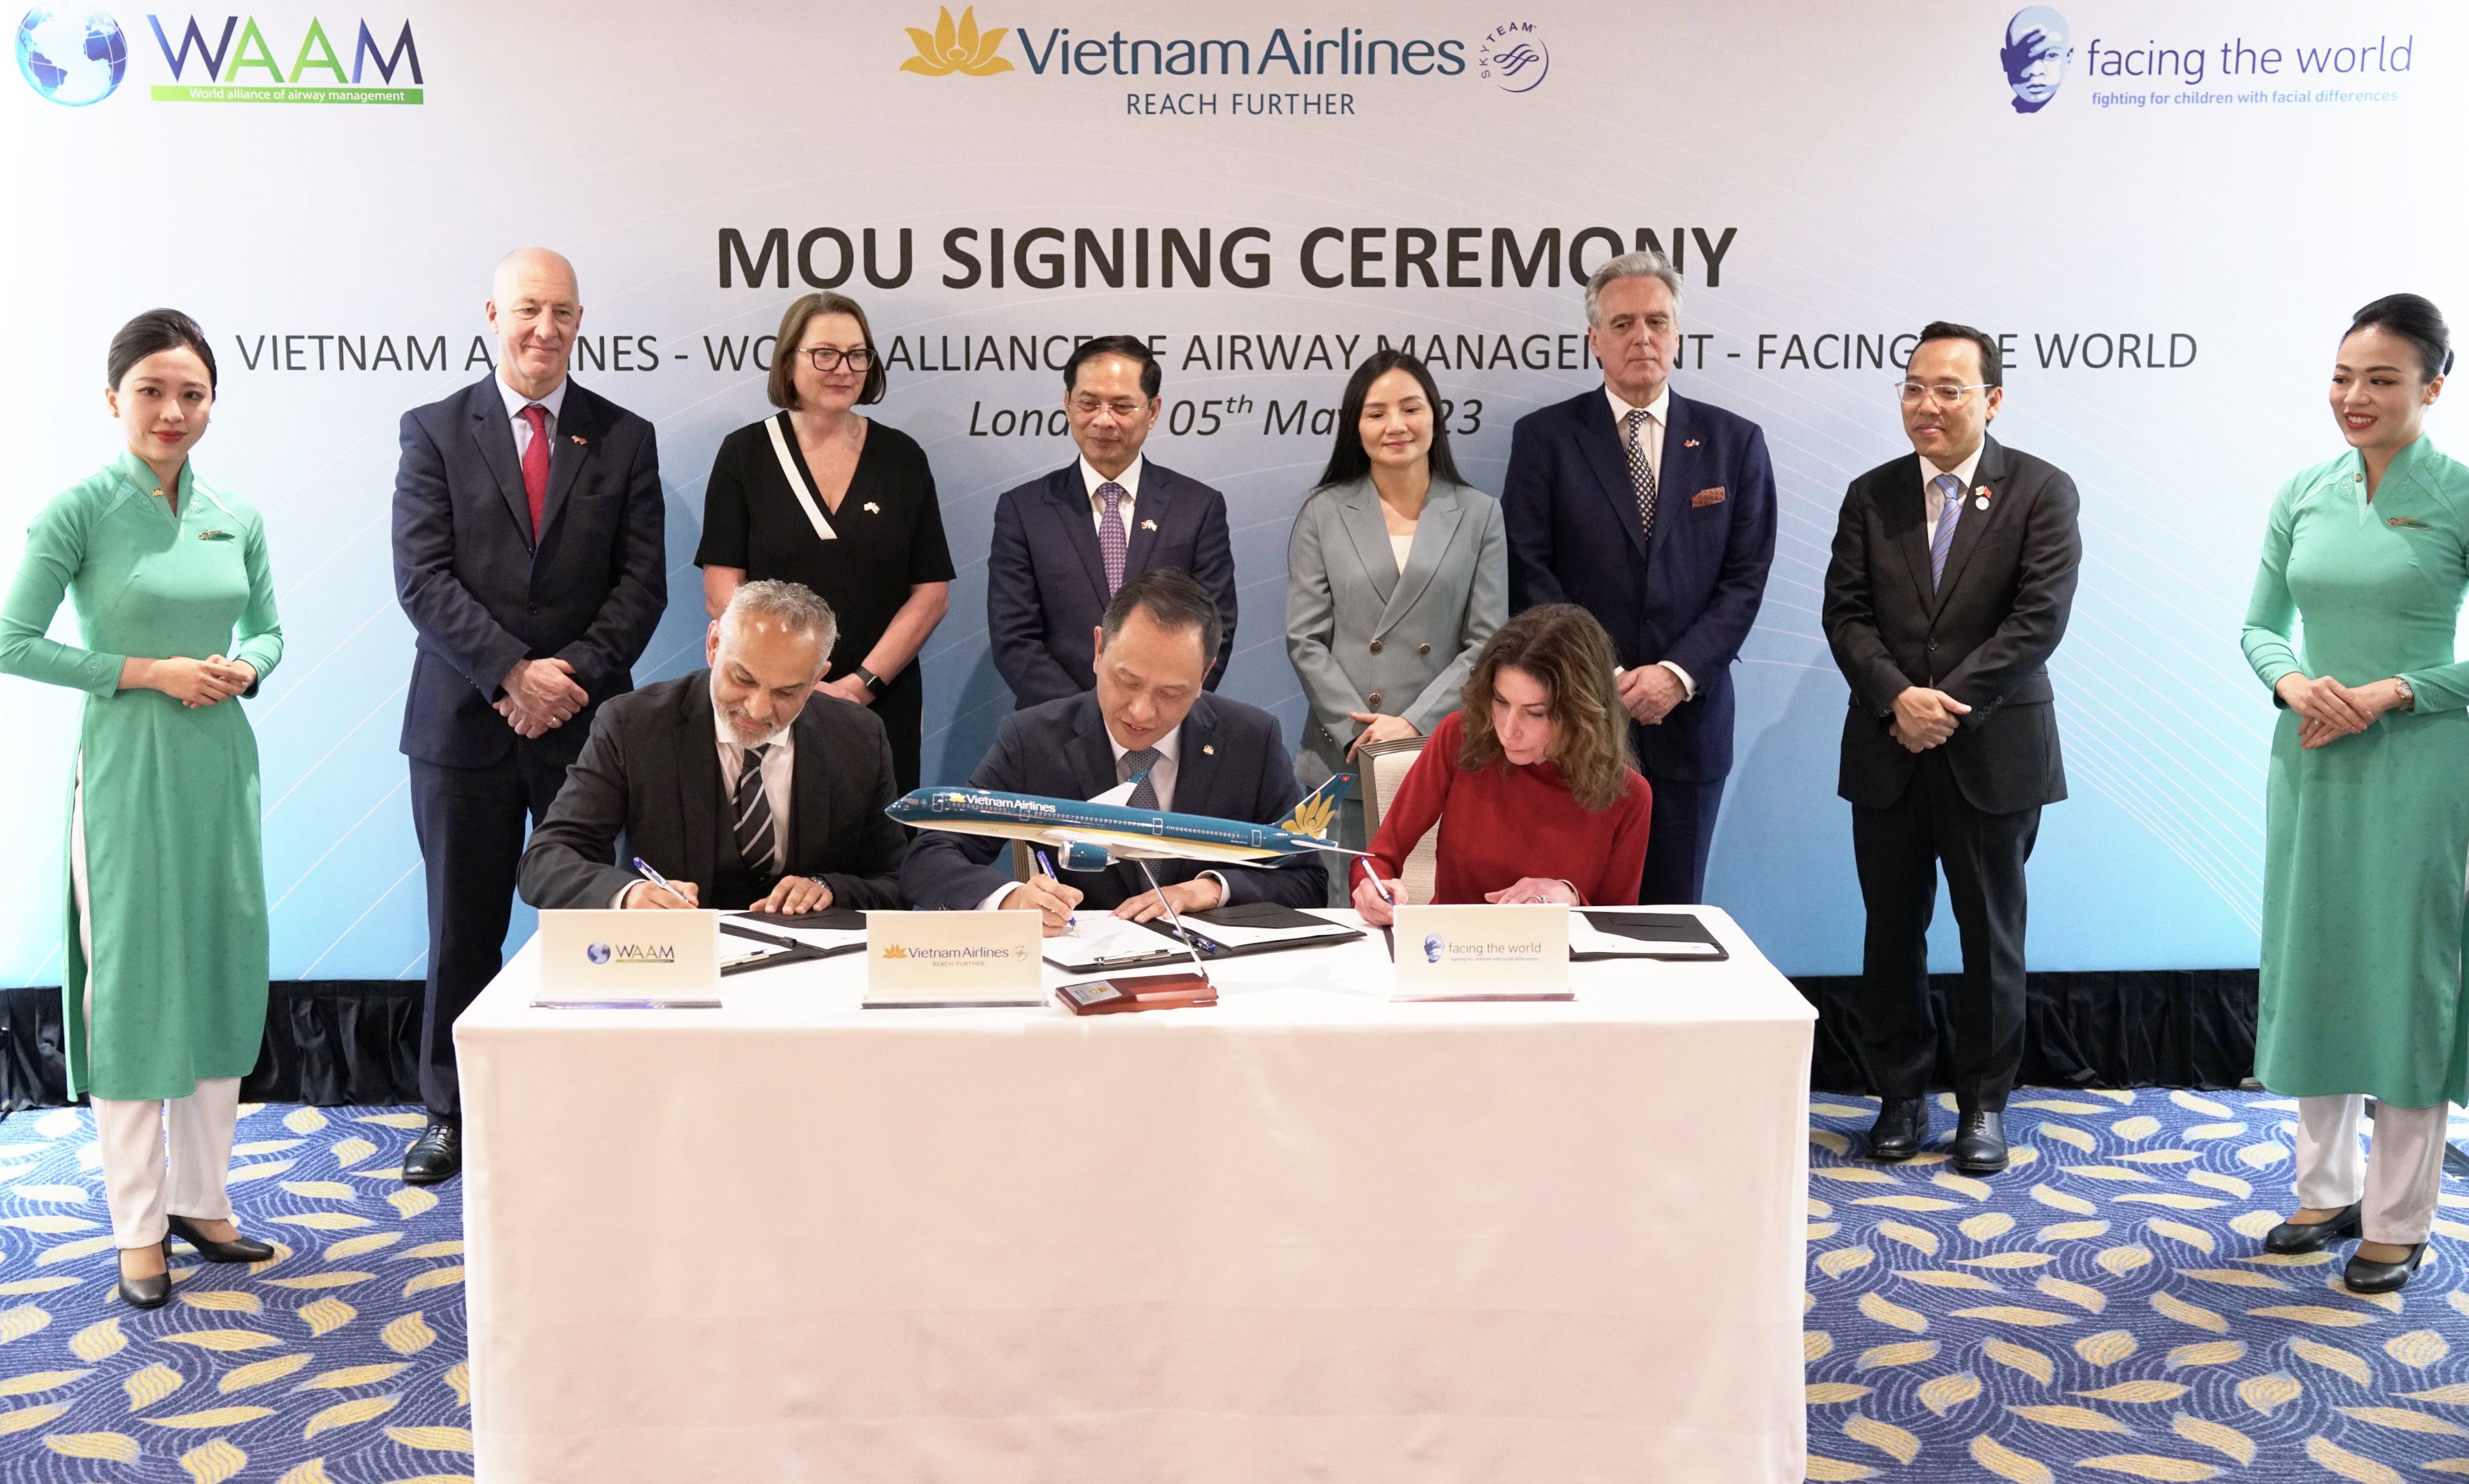 Đại diện Vietnam Airlines, đại diện Facing The World và đại diện Hội đồng quản trị Liên minh thế giới về quản lý đường thở ký kết biên bản ghi nhớ hợp tác ba bên.